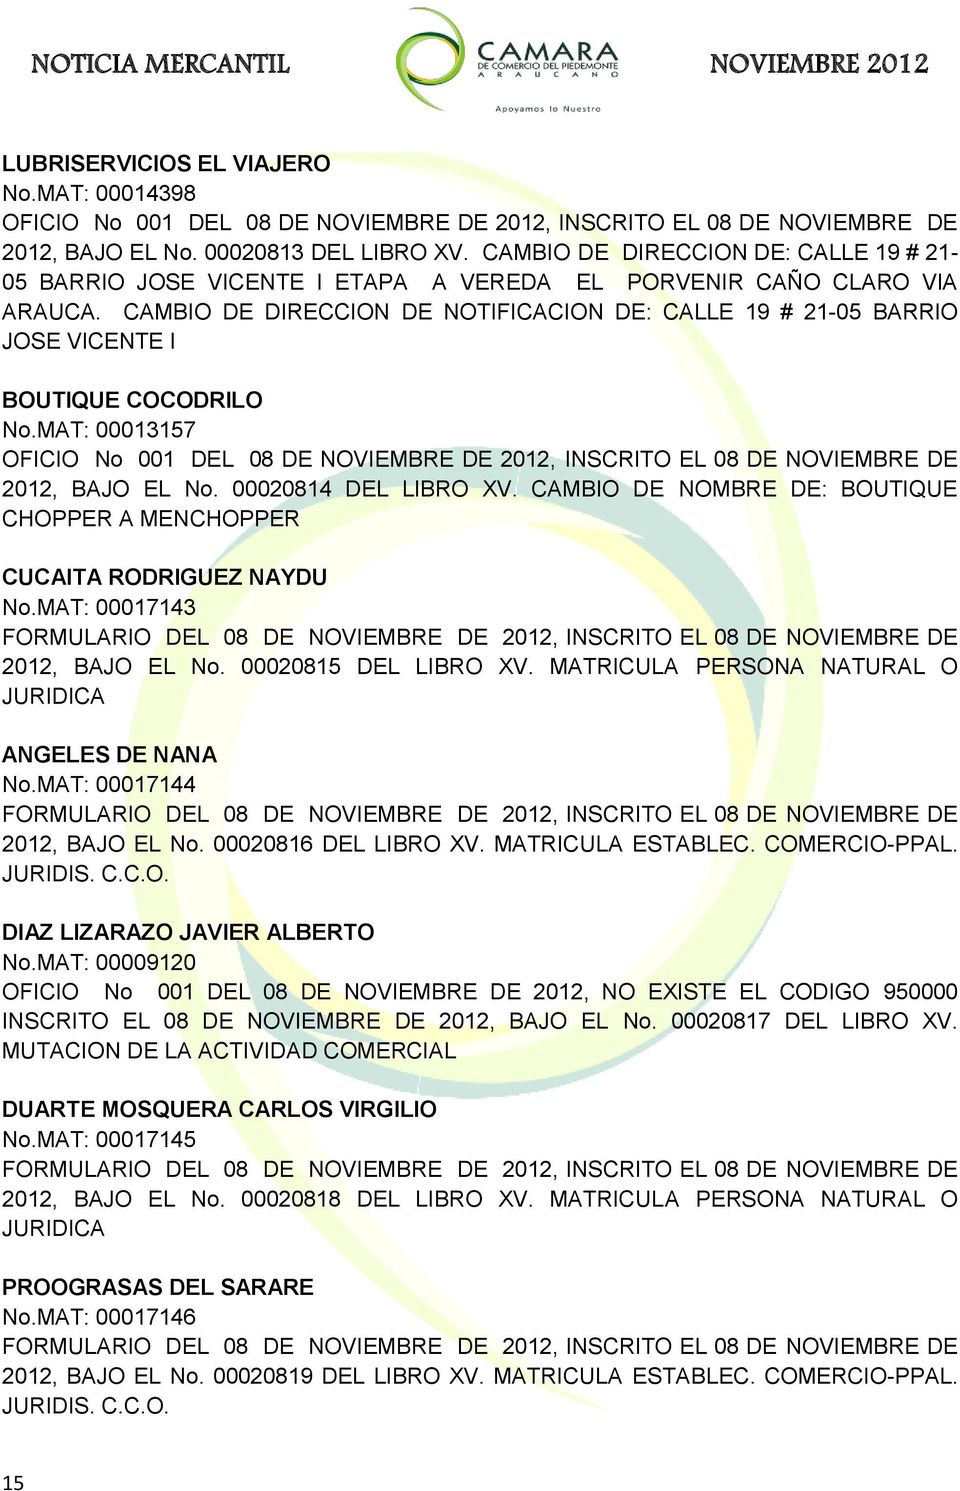 CAMBIO DE DIRECCION DE NOTIFICACION DE: CALLE 19 # 21-05 BARRIO JOSE VICENTE I BOUTIQUE COCODRILO No.